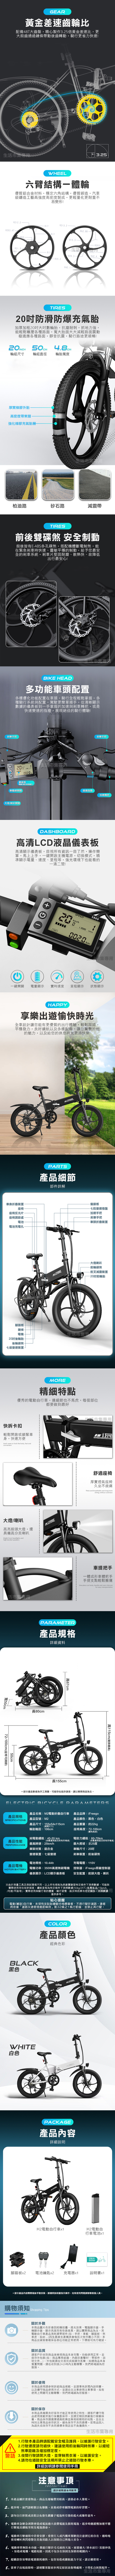 【iFreego】M2 電動折疊自行車 (電動腳踏車/電動自行車)